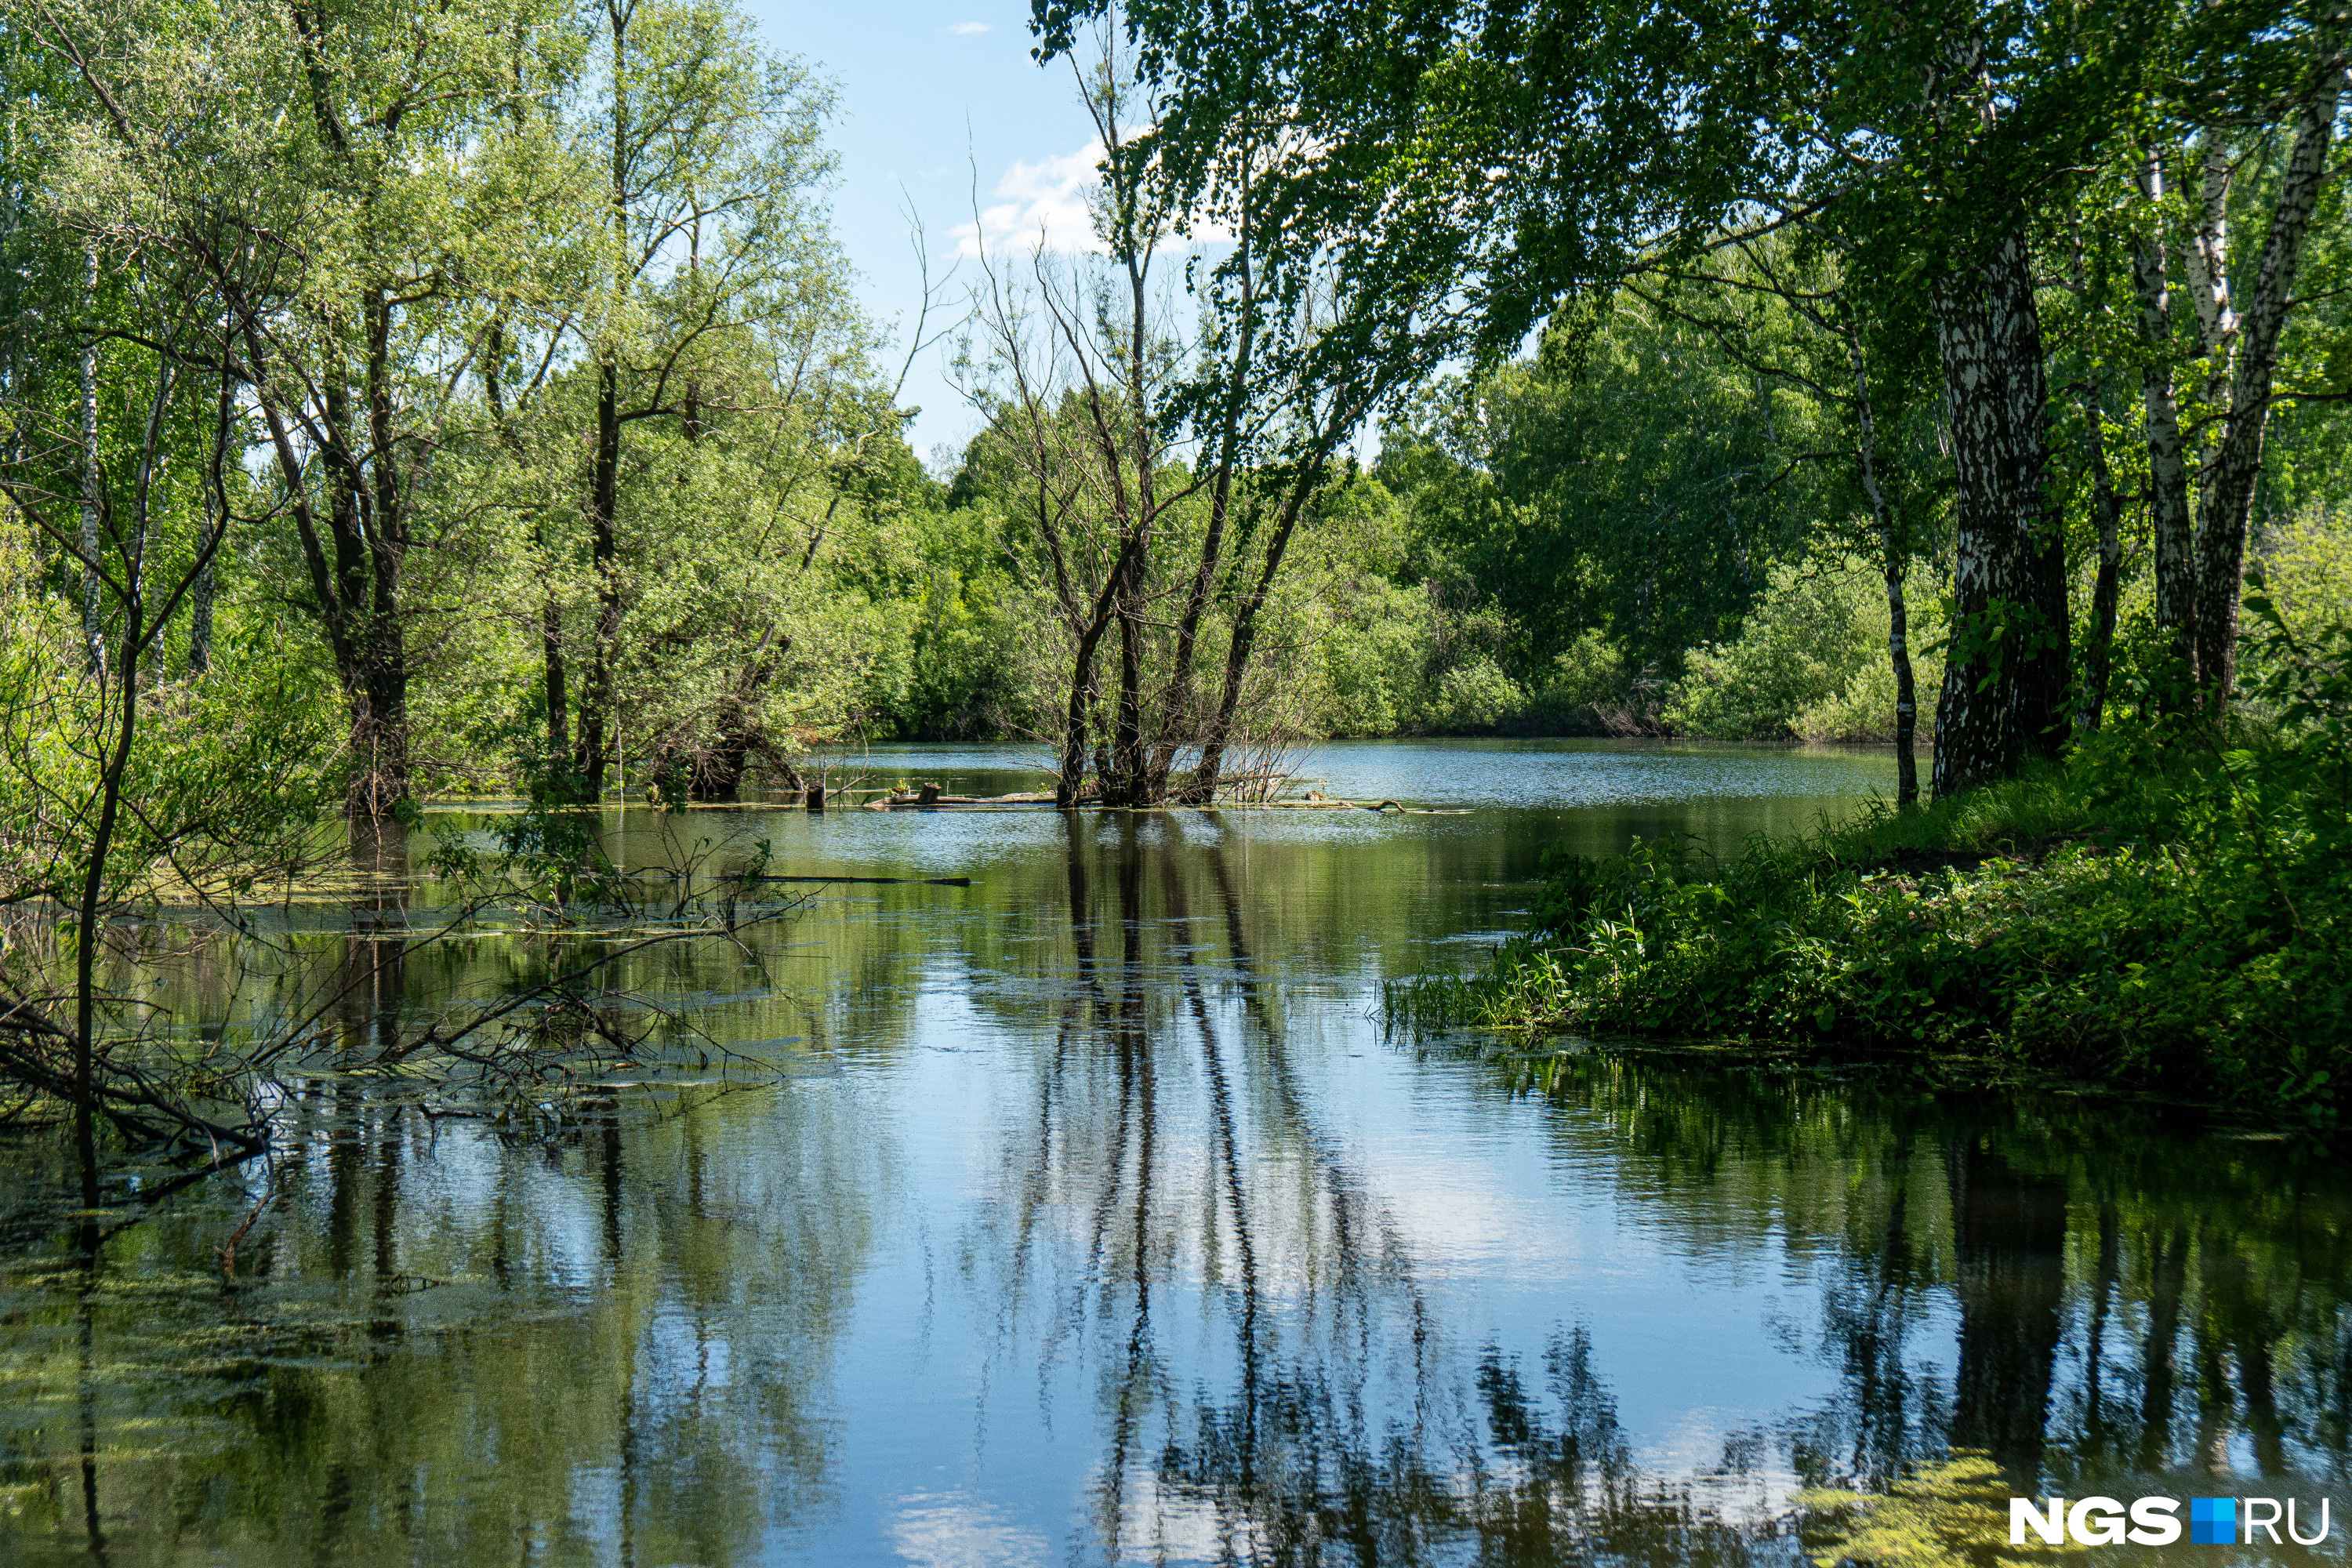 Речка берет начало в небольшом озере рядом с микрорайоном Ключевой — вероятно, ее образуют местные ключи и родники